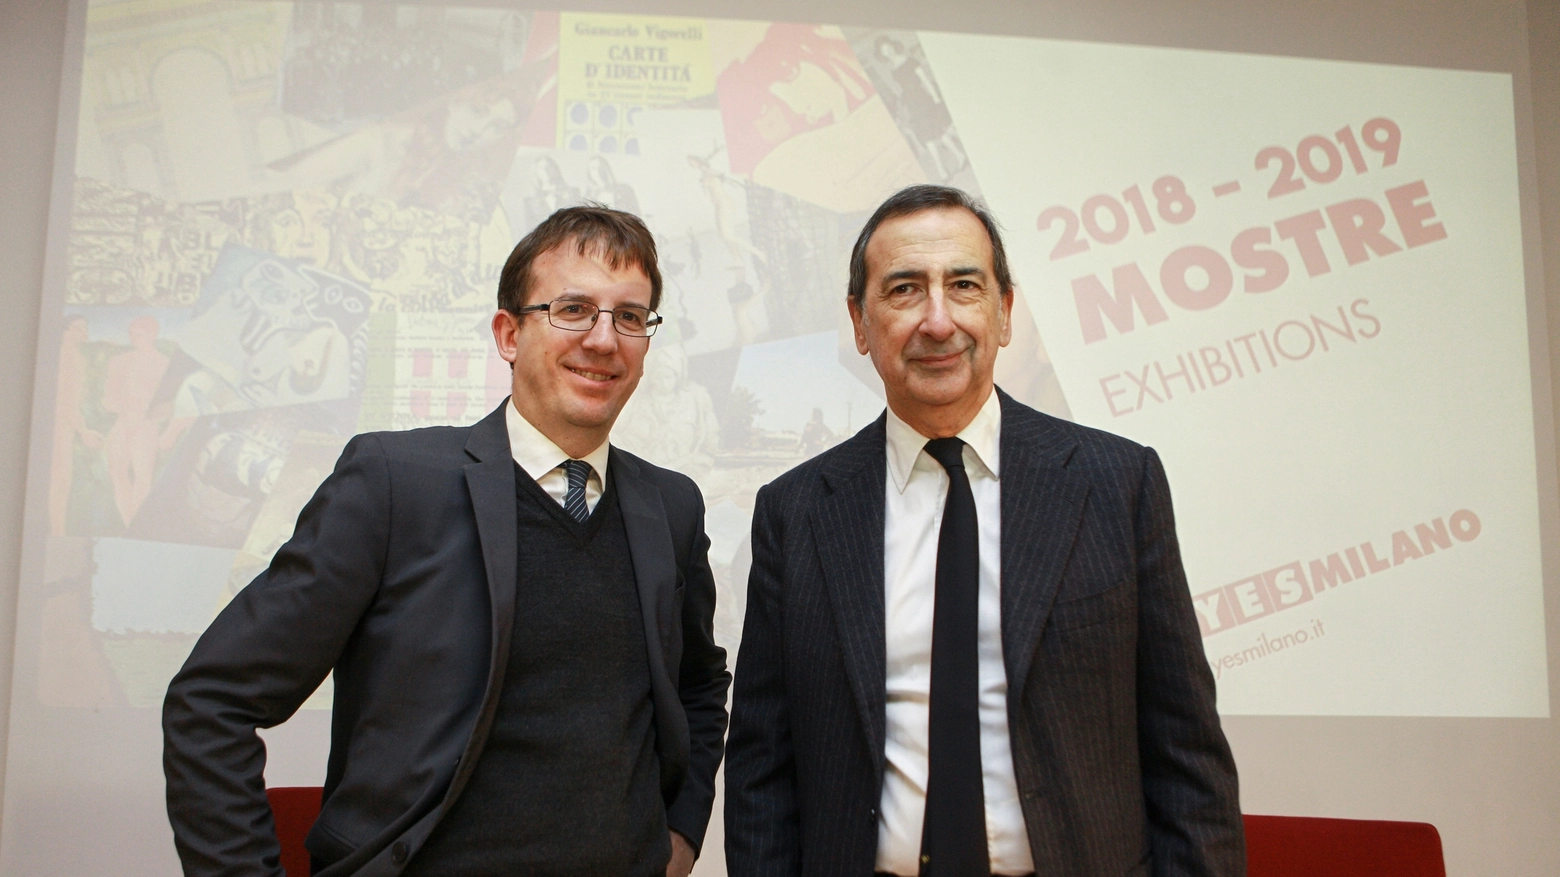 L'assessore Del Corno e il sindaco Sala presentano le mostre del 2018 a Milano (Newpress)